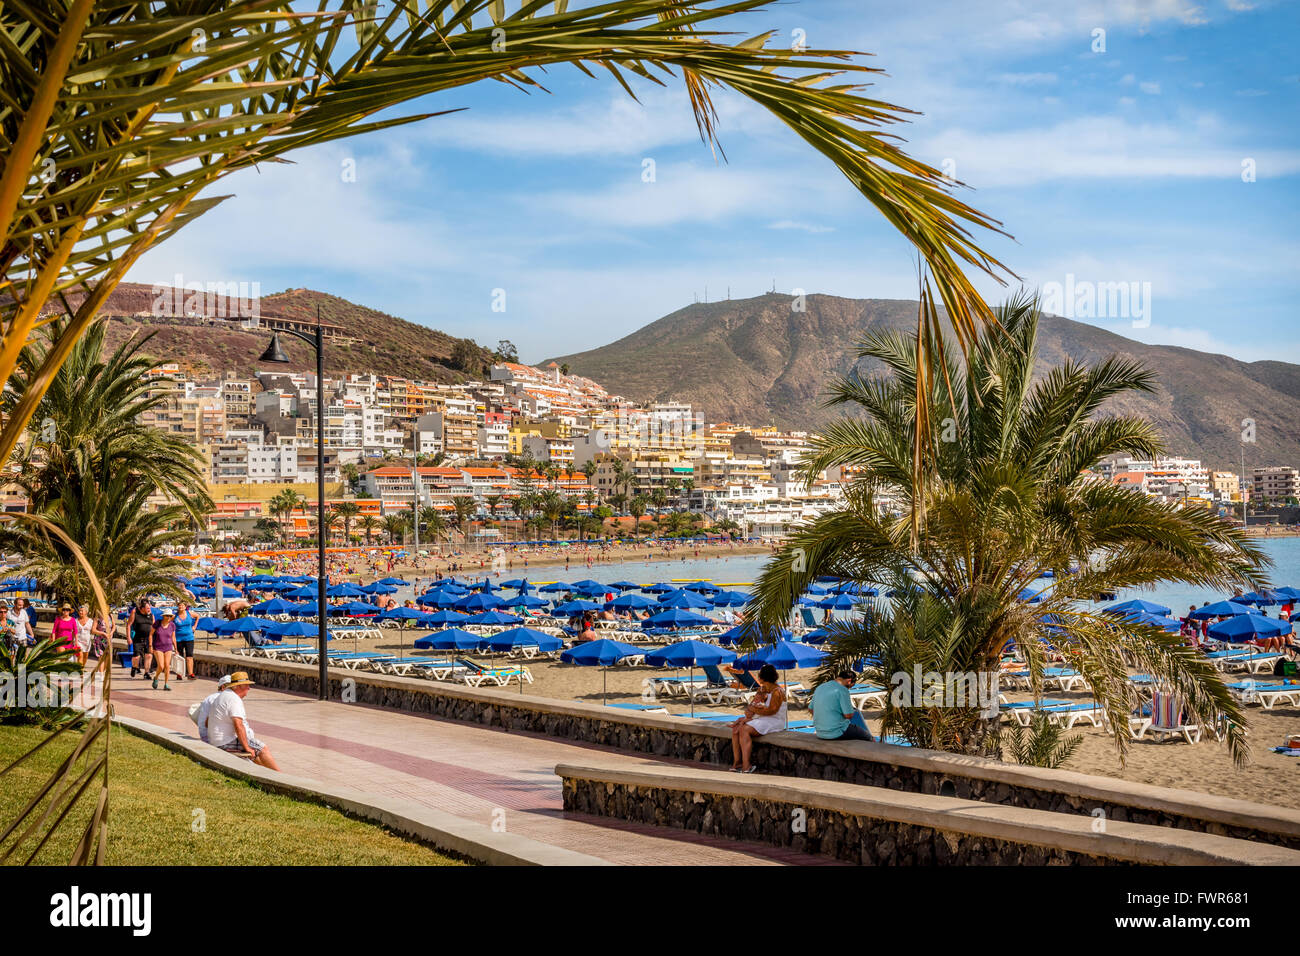 Beach and hotels, Playa de las Vistas, Los Cristianos, Tenerife Stock Photo